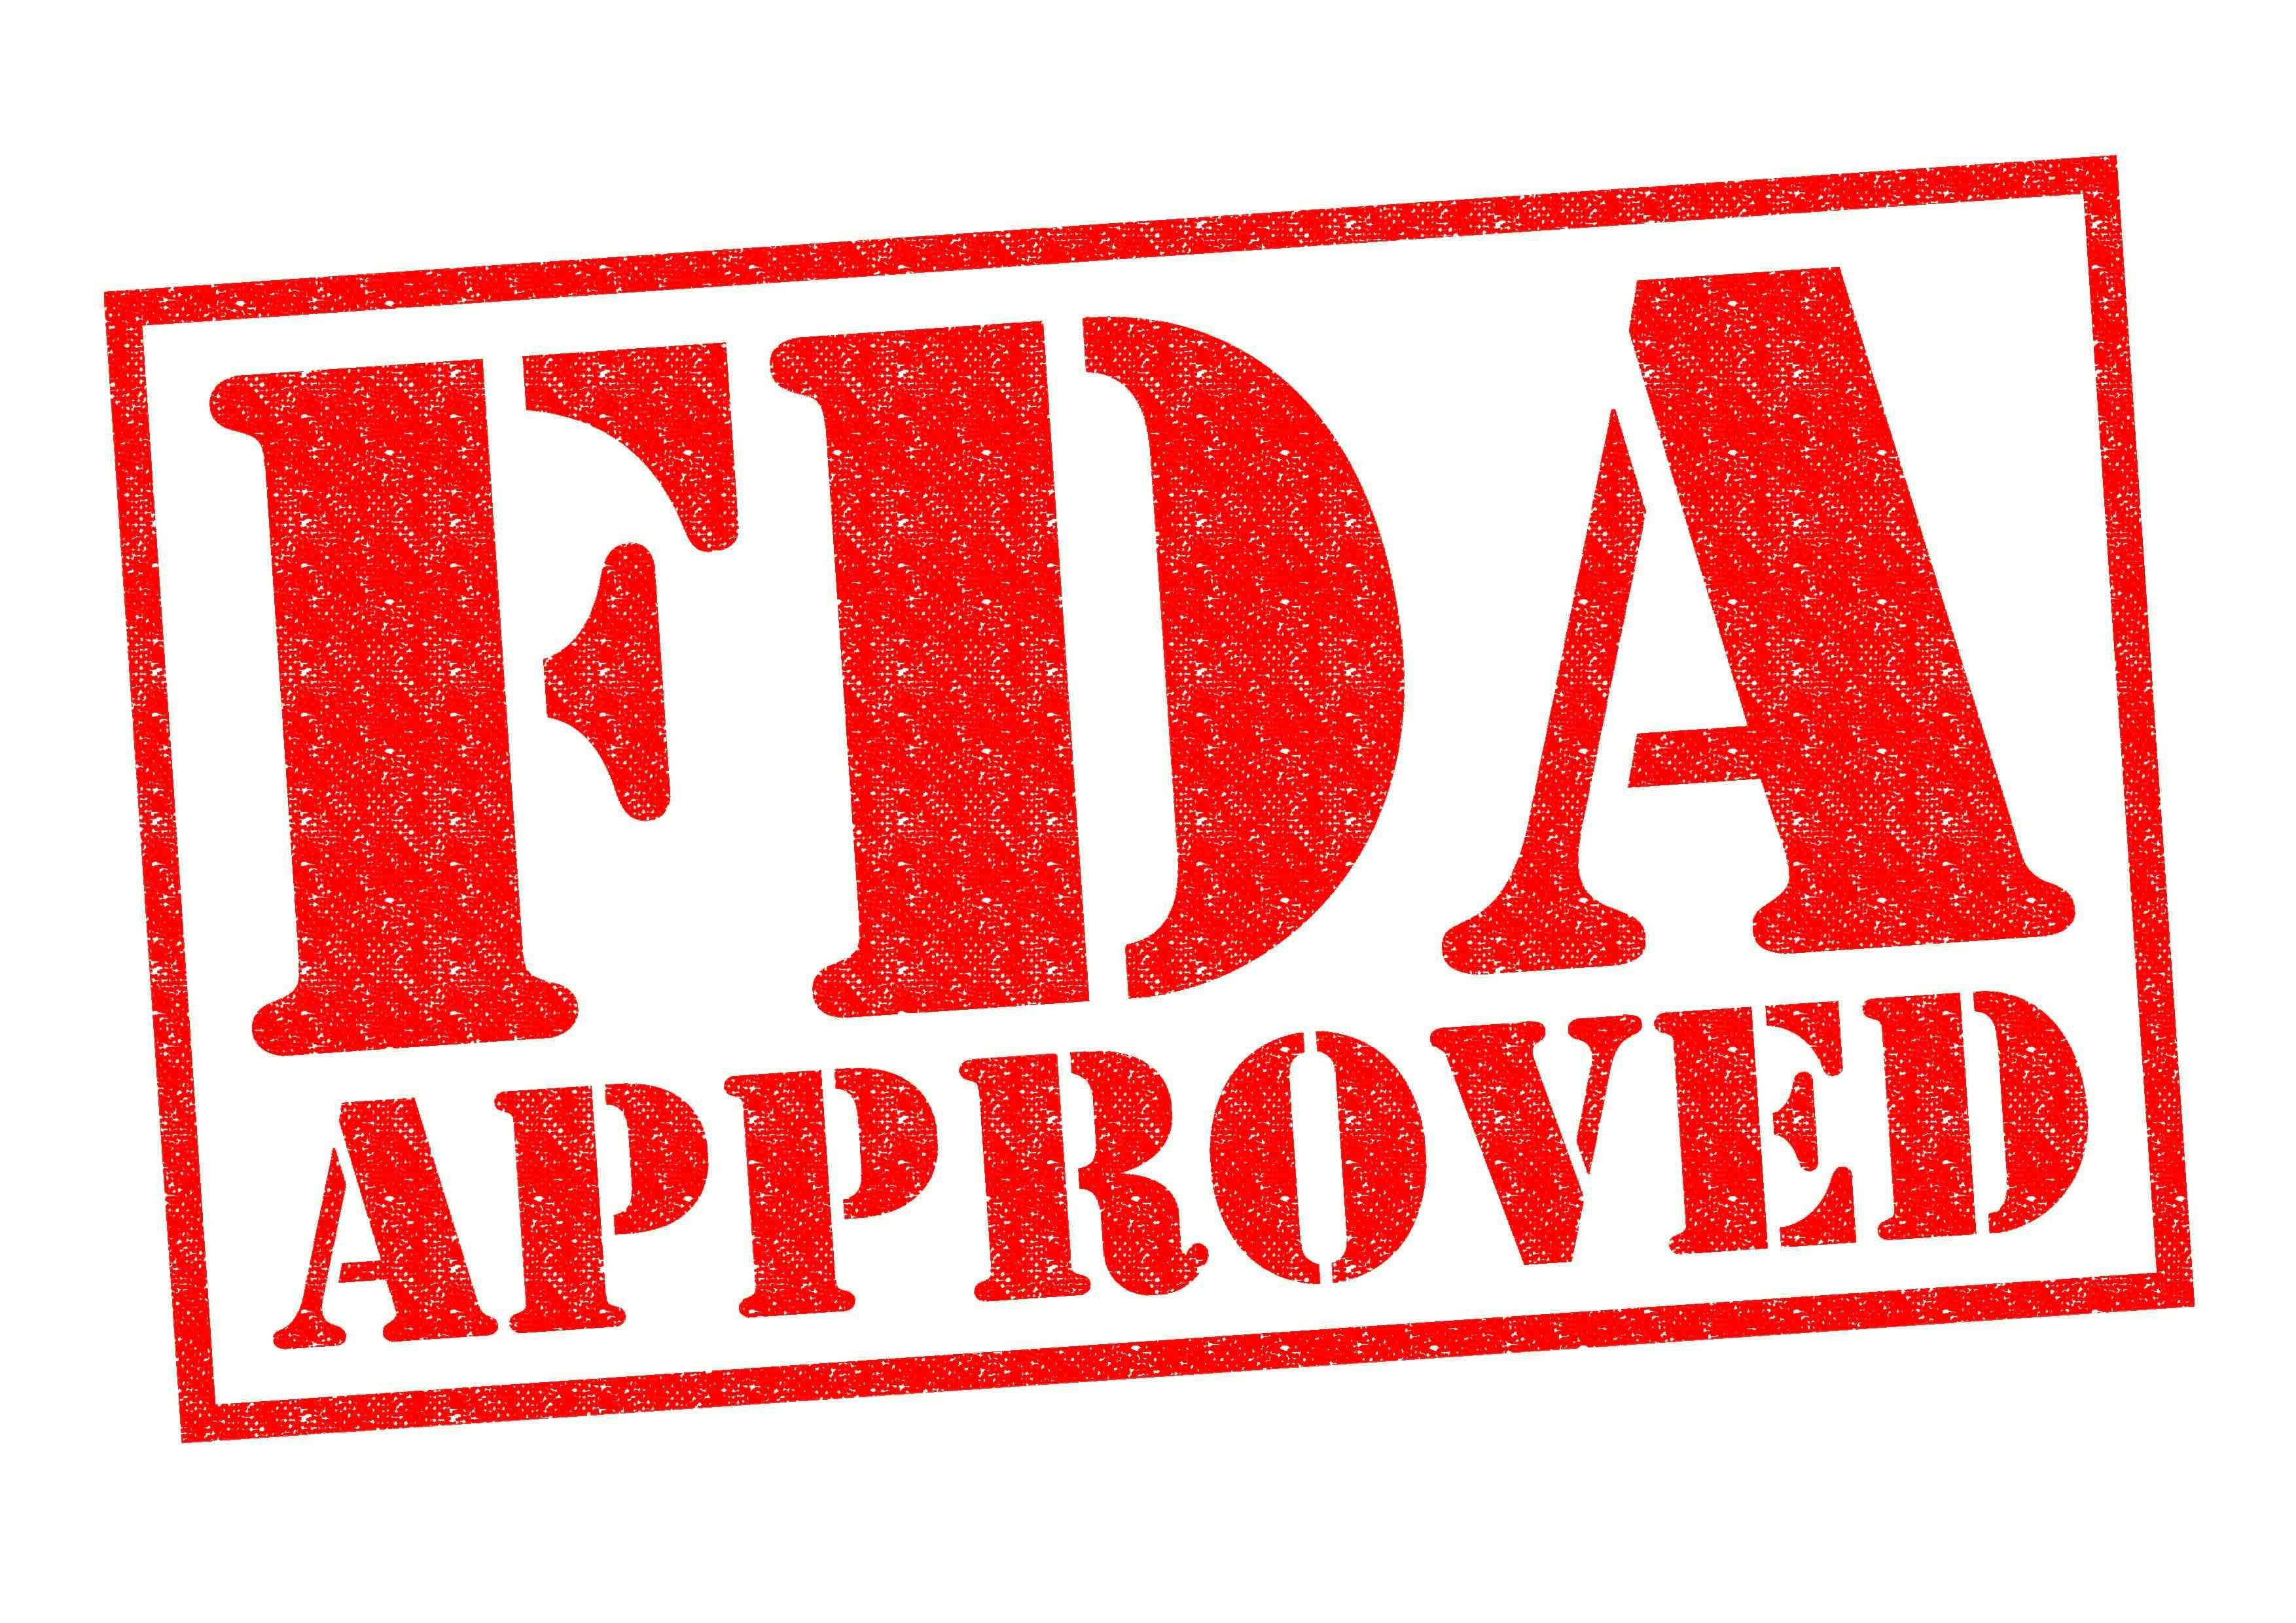 FDA Approved | Image Credit: chrisdorney - stock.adobe.com.jpg